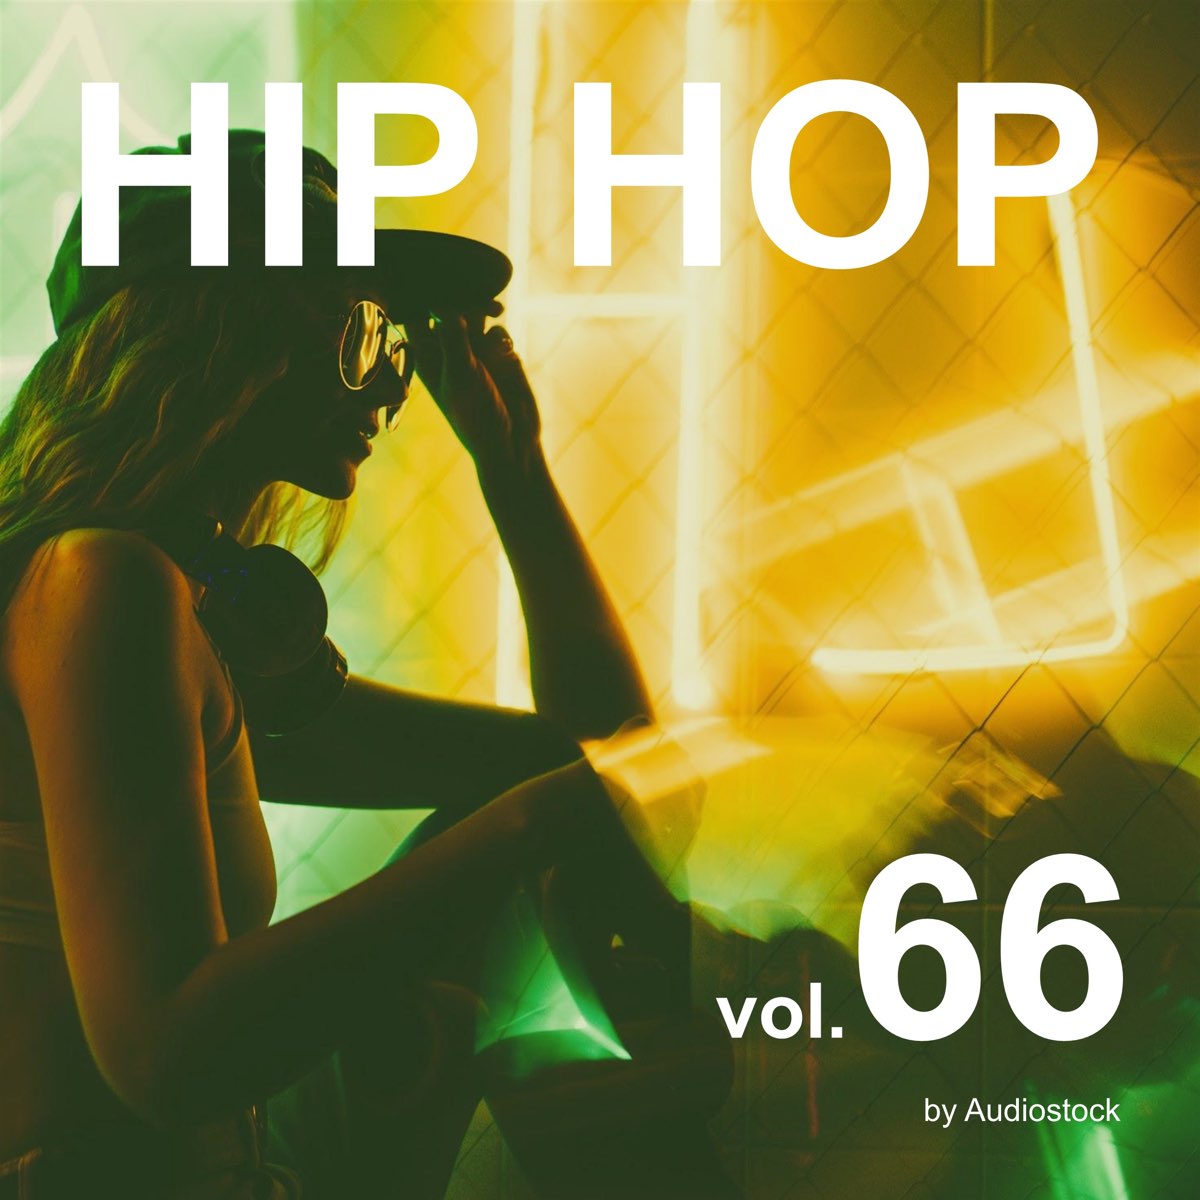 ‎ヴァリアス・アーティストの「hip Hop Vol 66 Instrumental Bgm By Audiostock」をapple Musicで